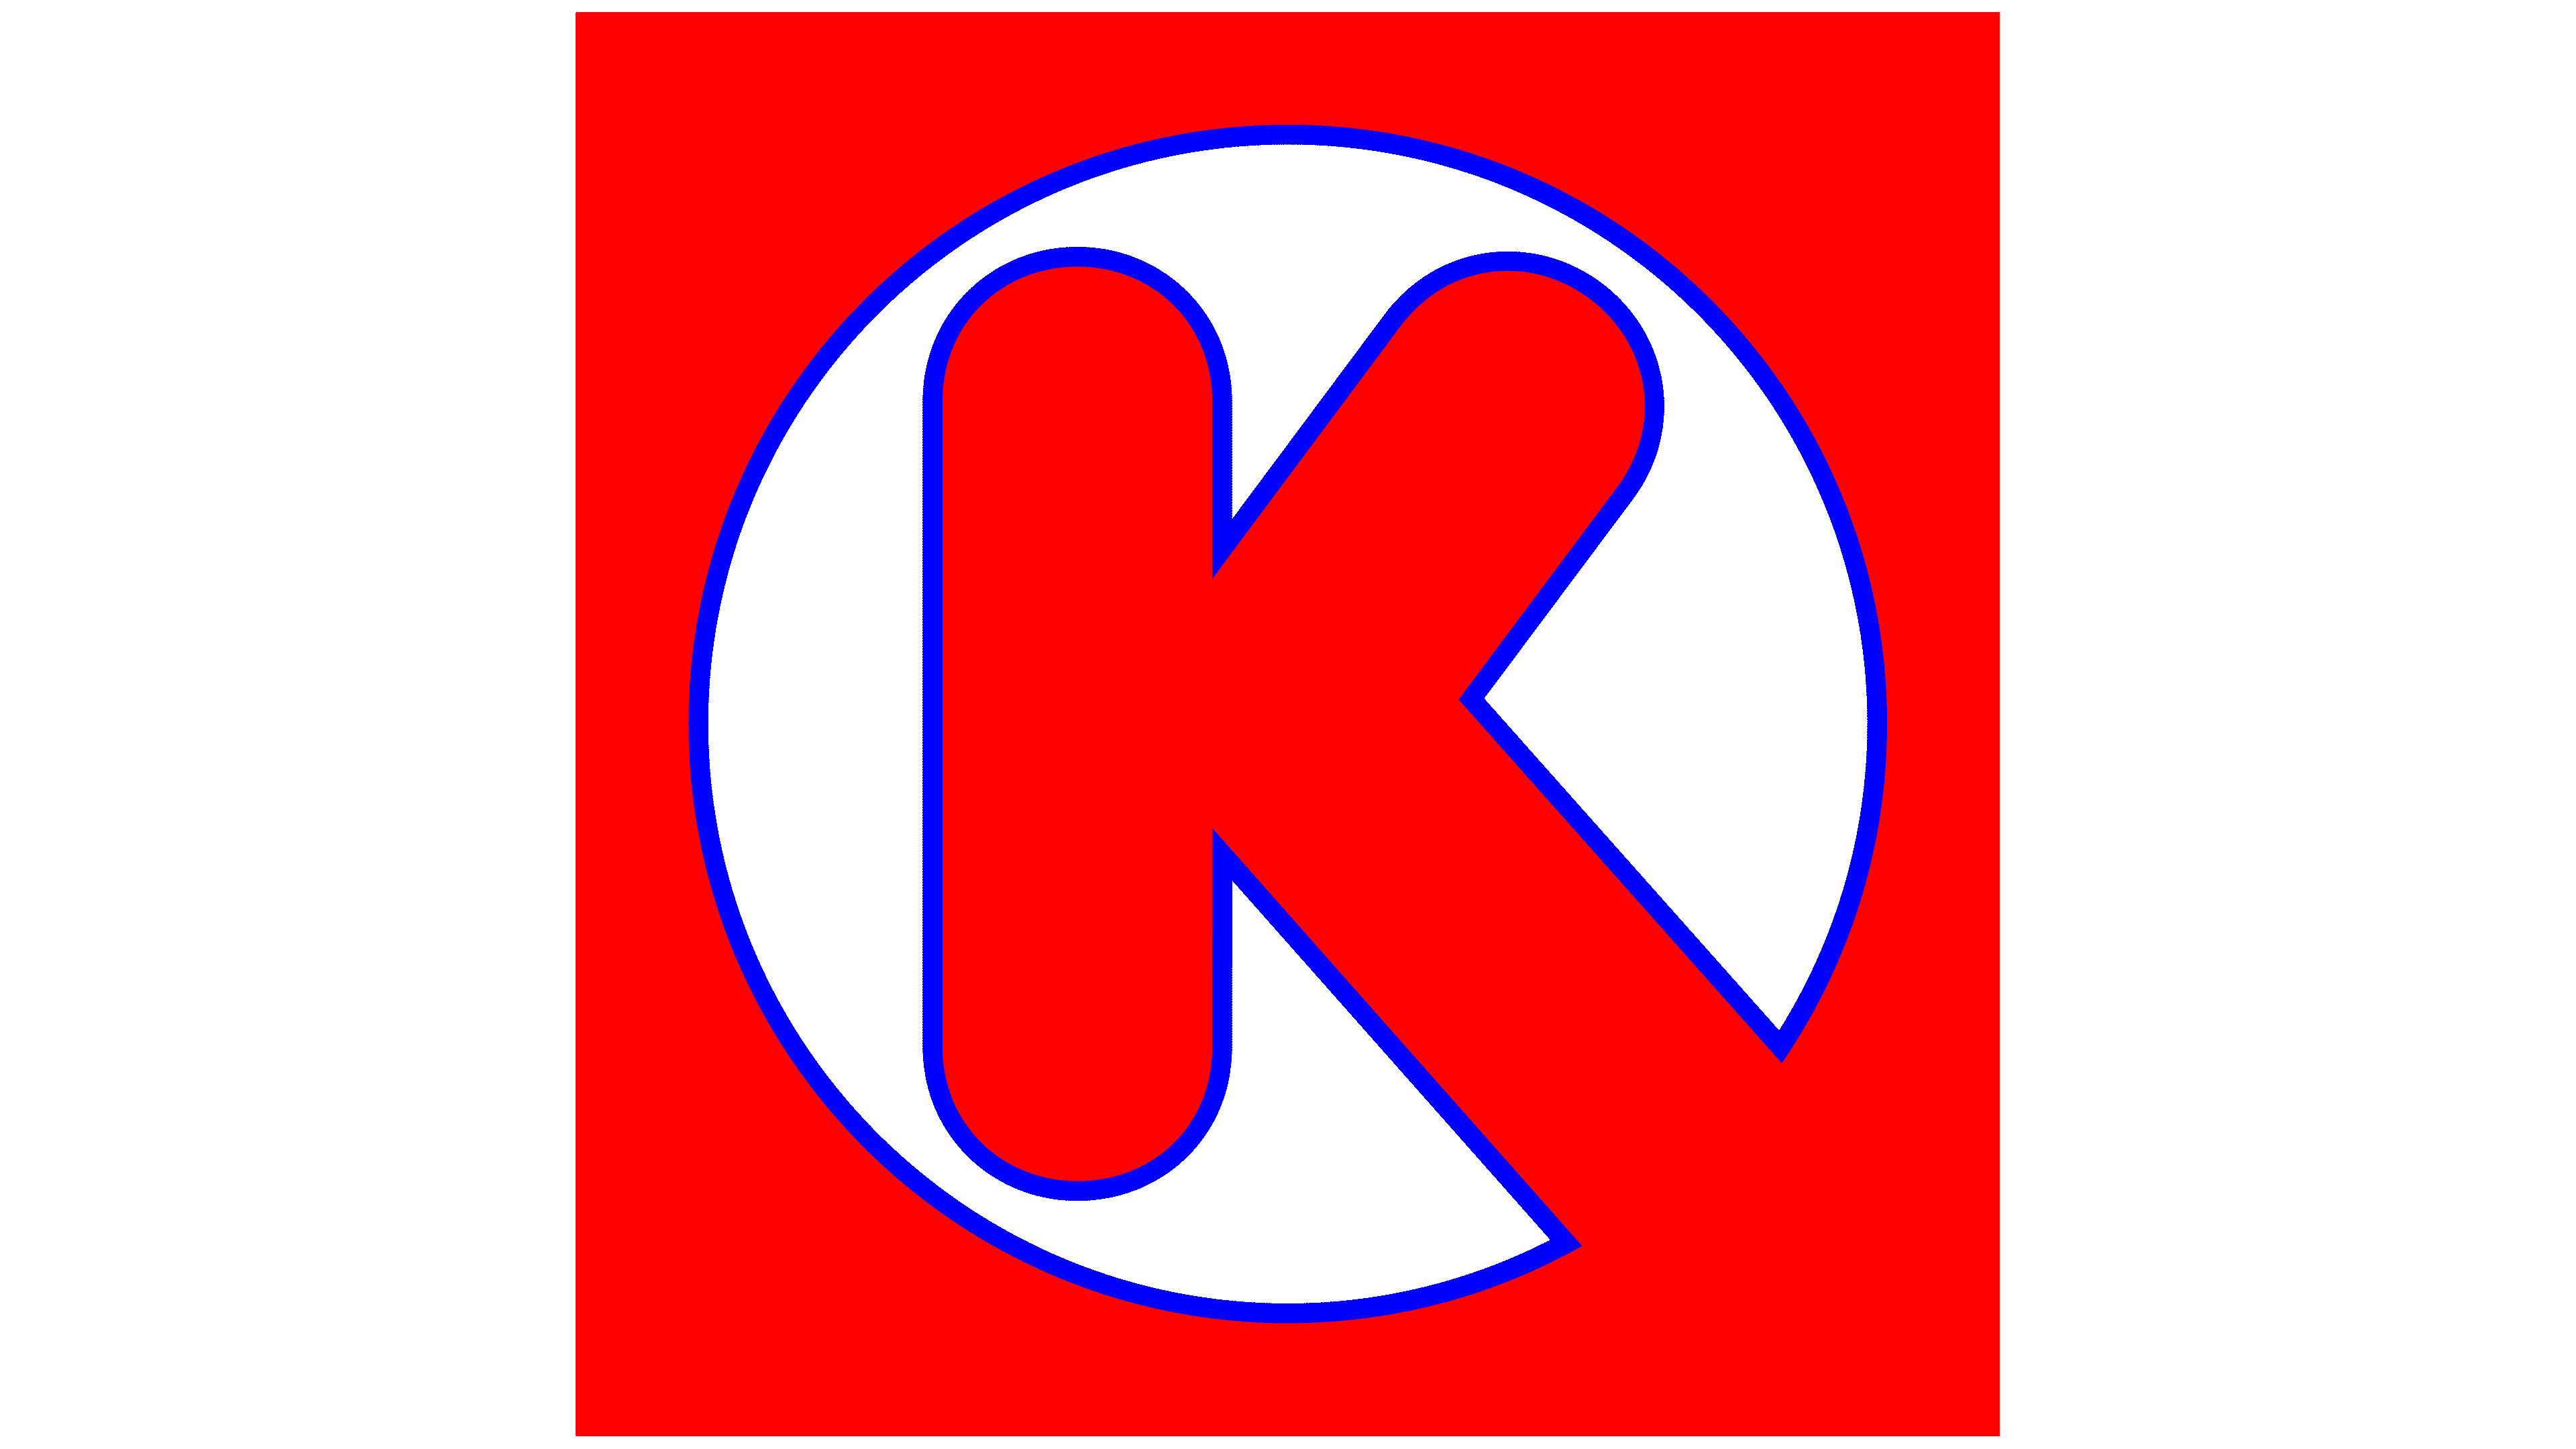 Circle K Logo, symbol, history, PNG, brand